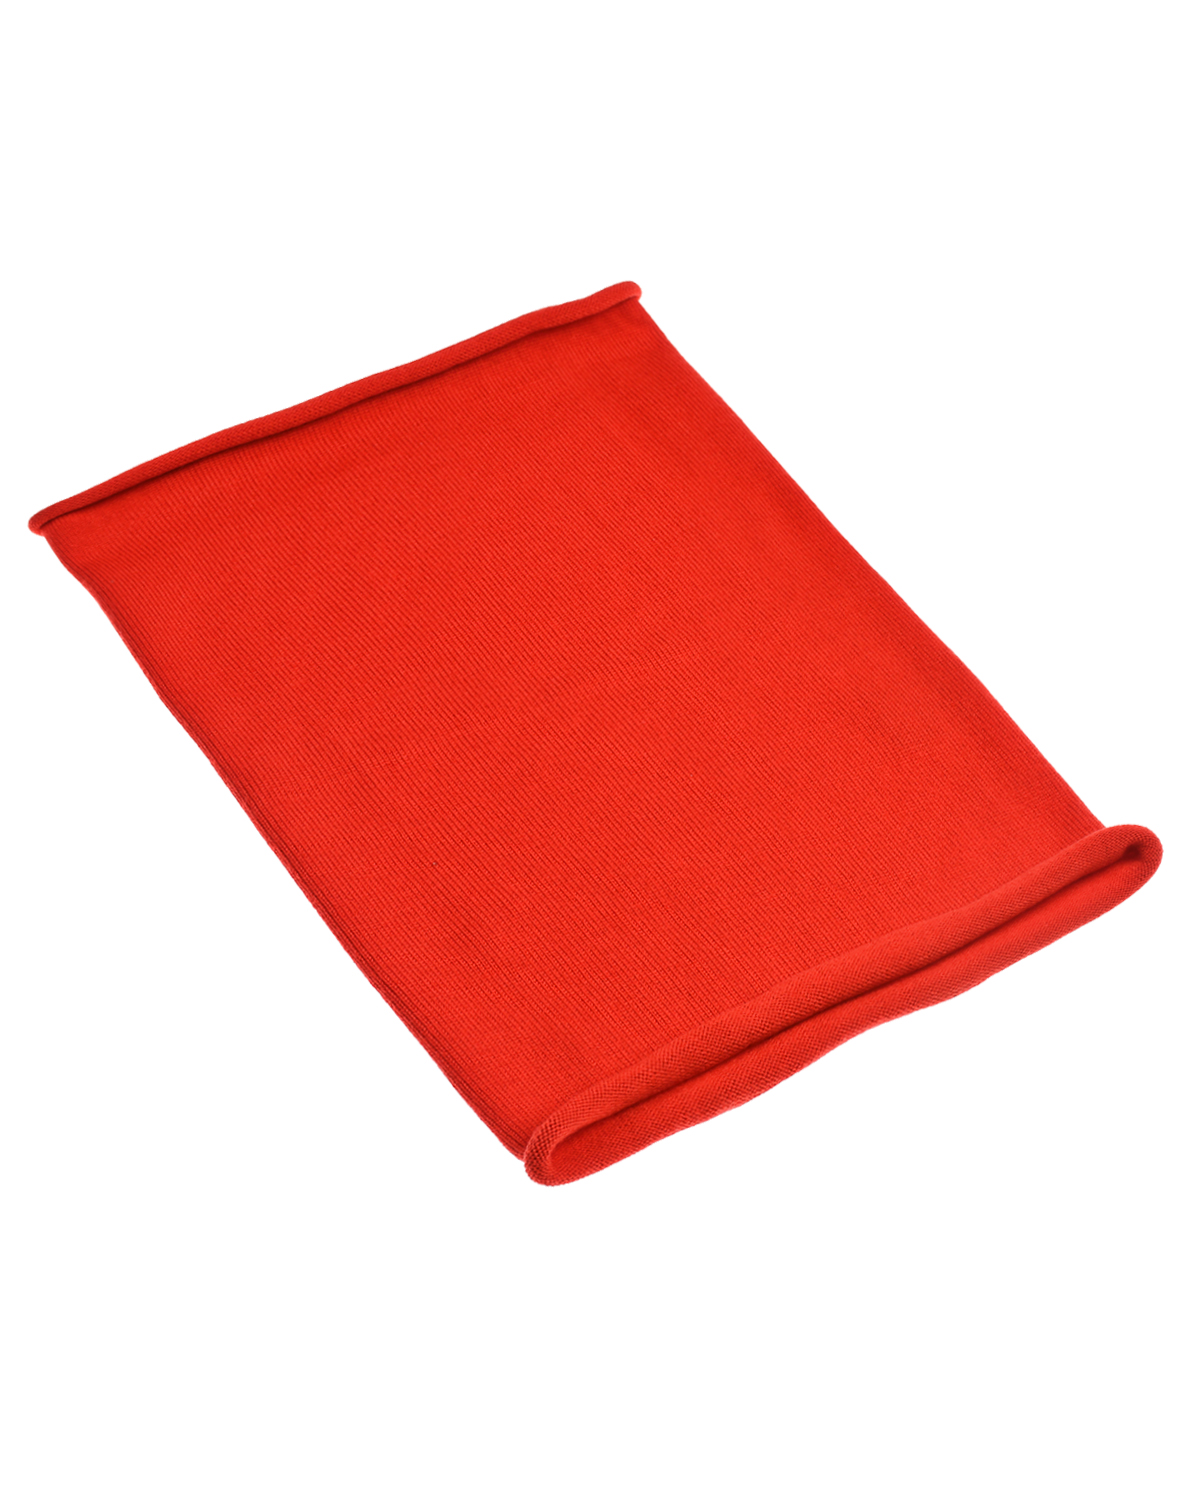 Красный шарф-ворот Norveg детский, размер unica